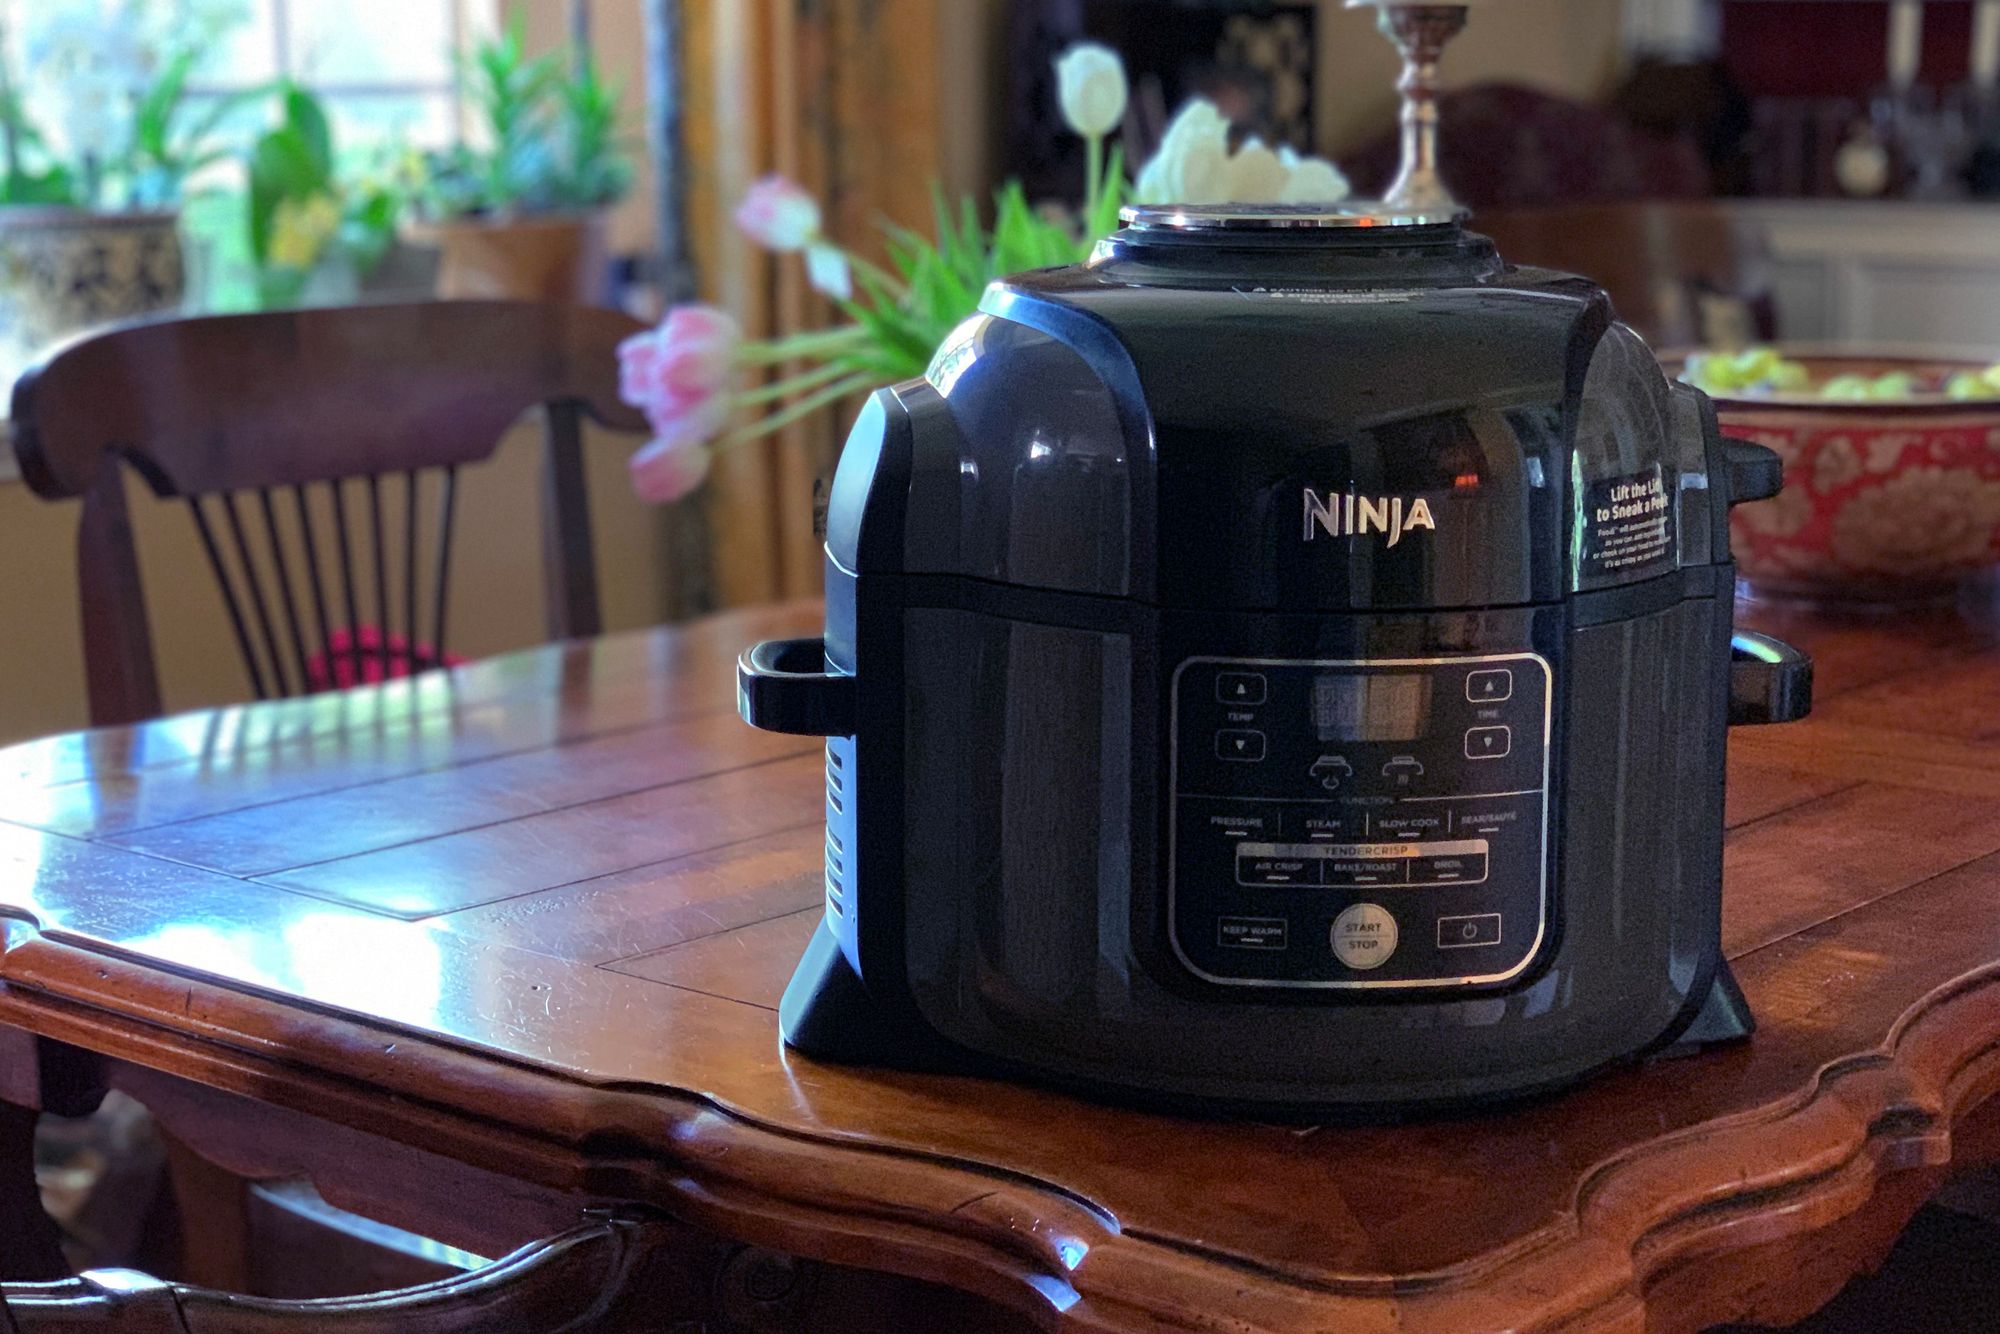 Ninja Foodi Pressure Cooker That Crisp 1000 Days: The Complete Guide of  Ninja Foodi Cookbook for Beginners to Pressure Cook, Air Fry, Crisp, Slow